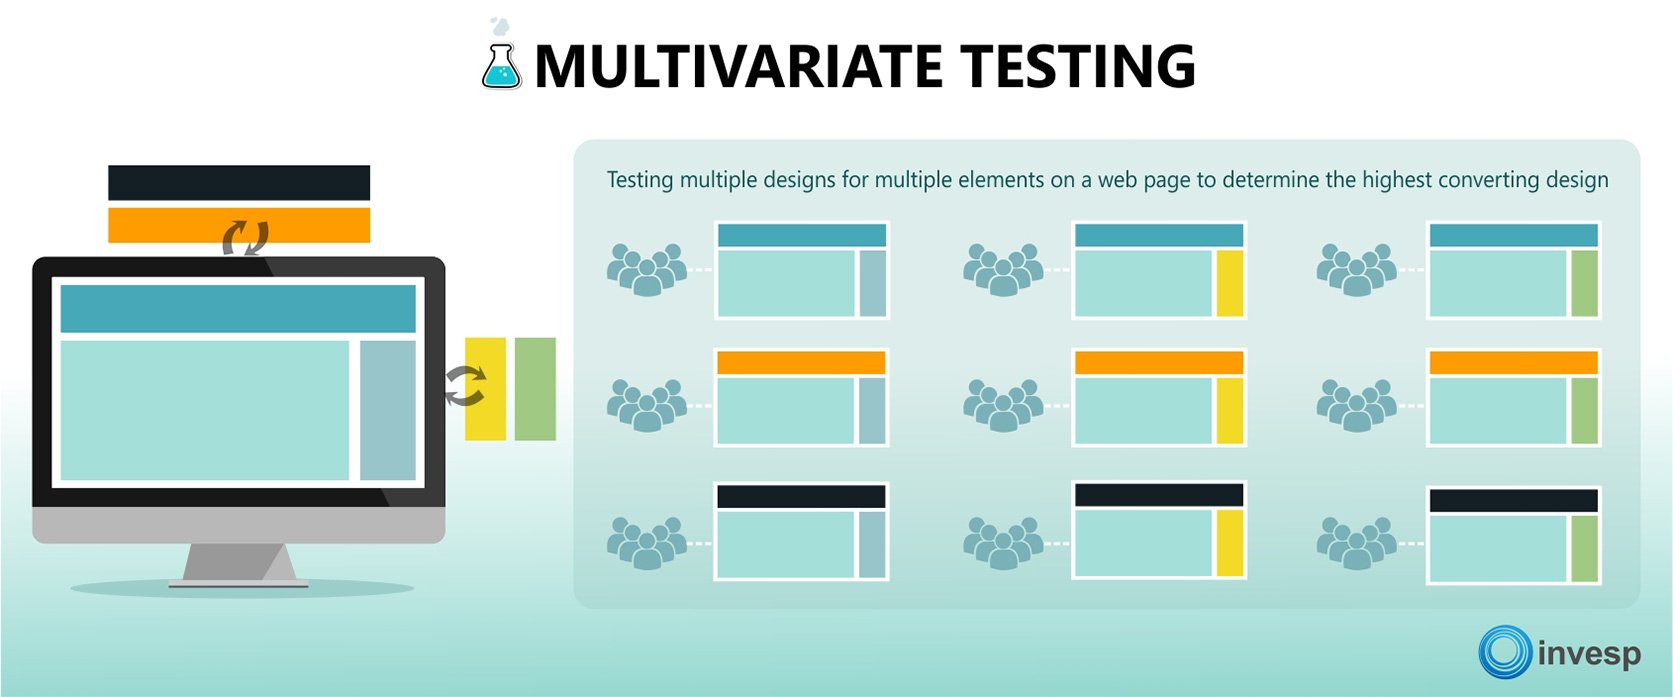 Multivariate testing